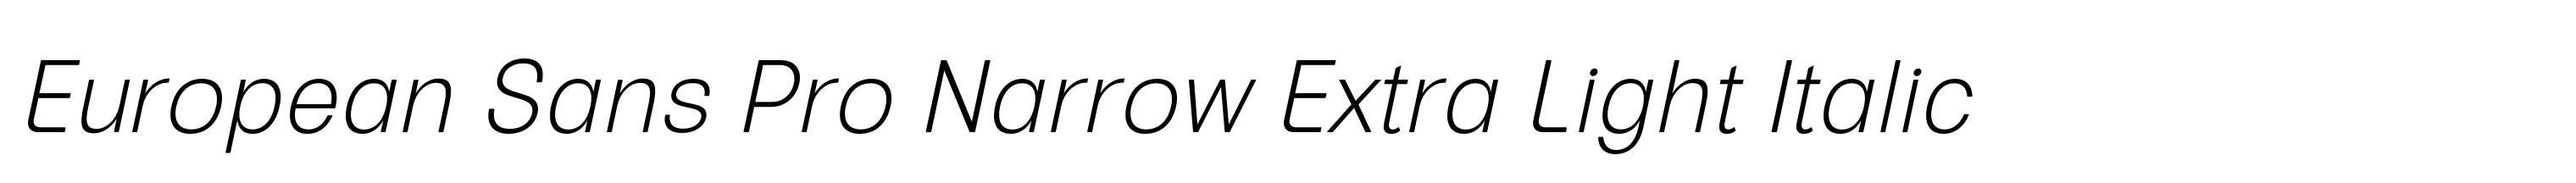 European Sans Pro Narrow Extra Light Italic